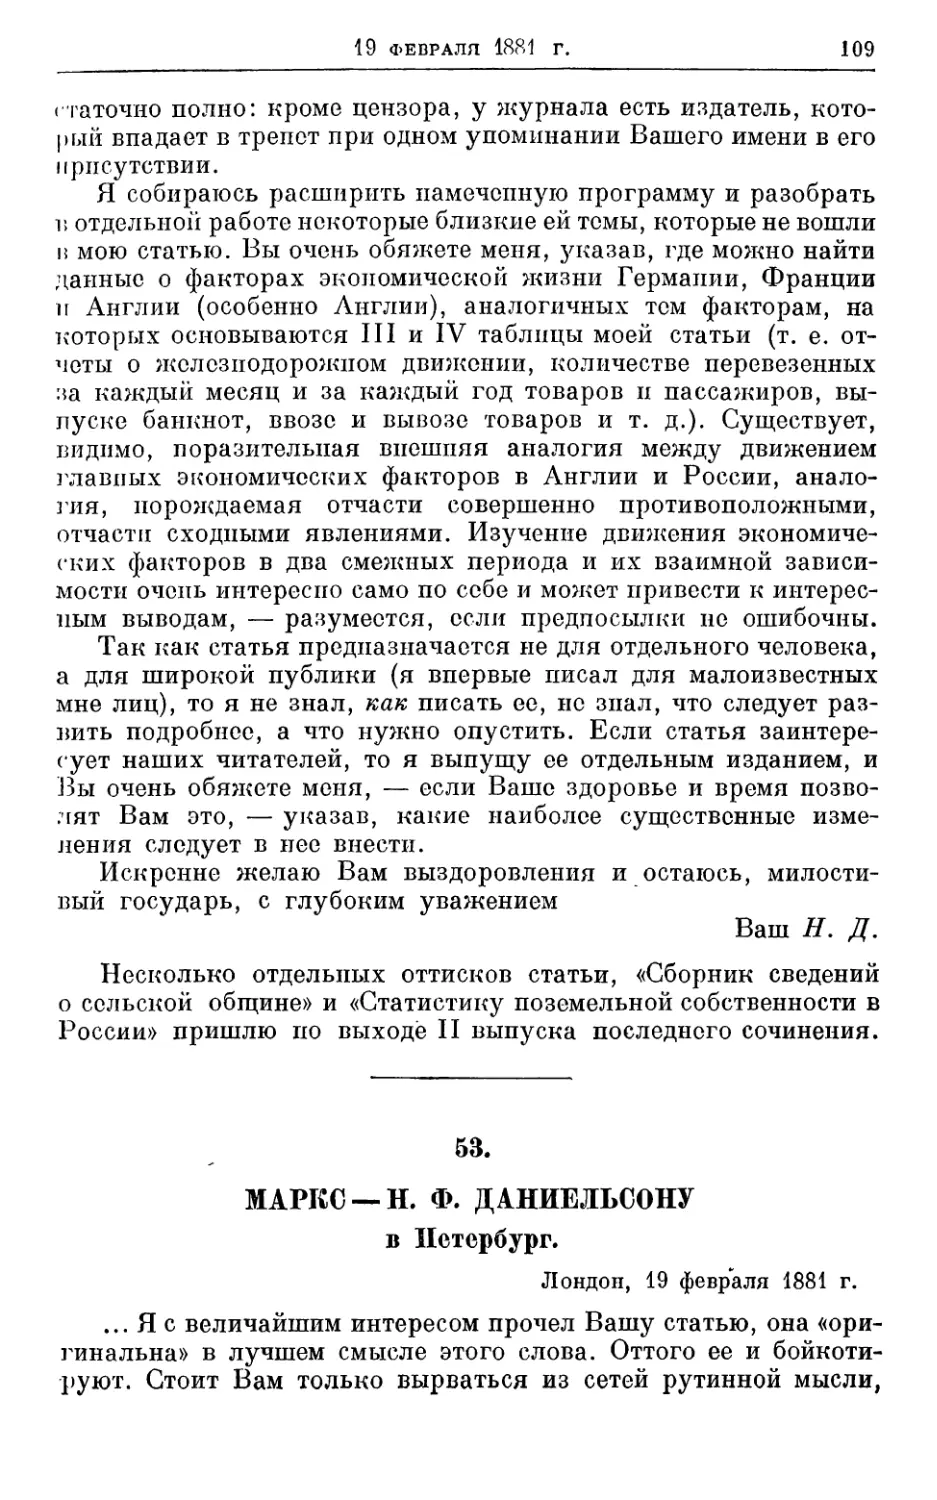 53. Маркс — Н. Ф. Даниельсону, 19 февраля 1881г